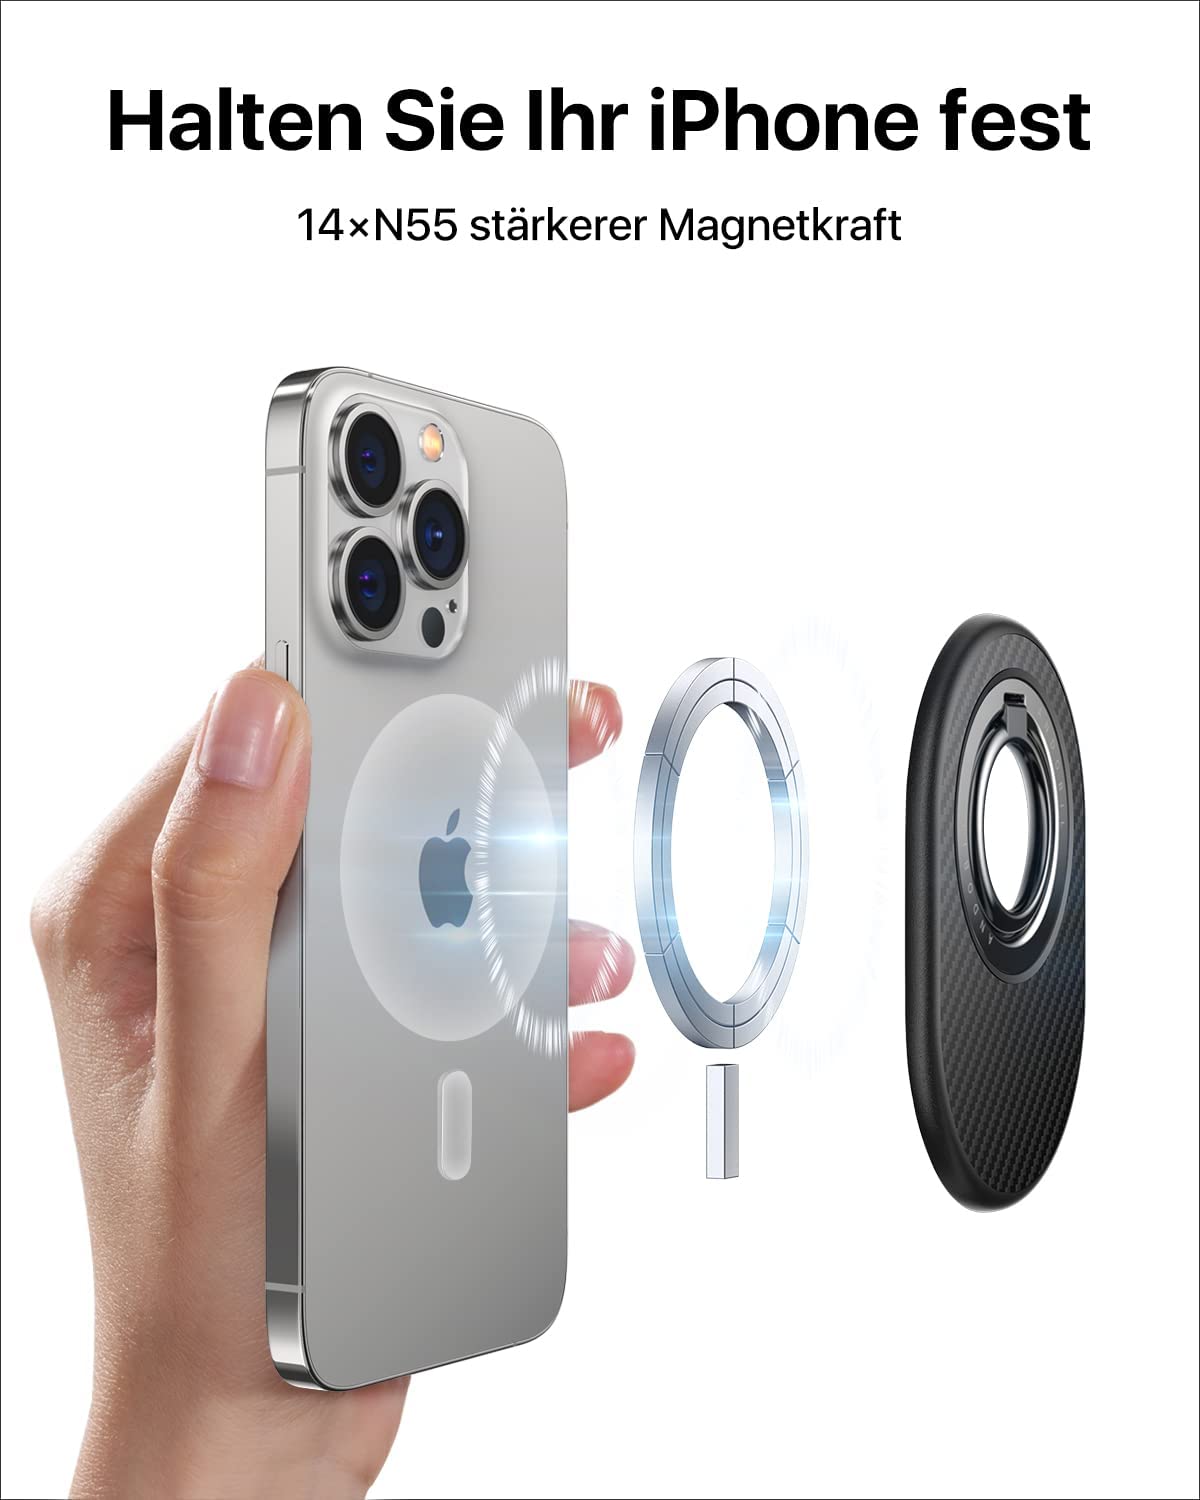 Andobil Magnet Handy Ring Halterung (MagSafe kompatibel) für…